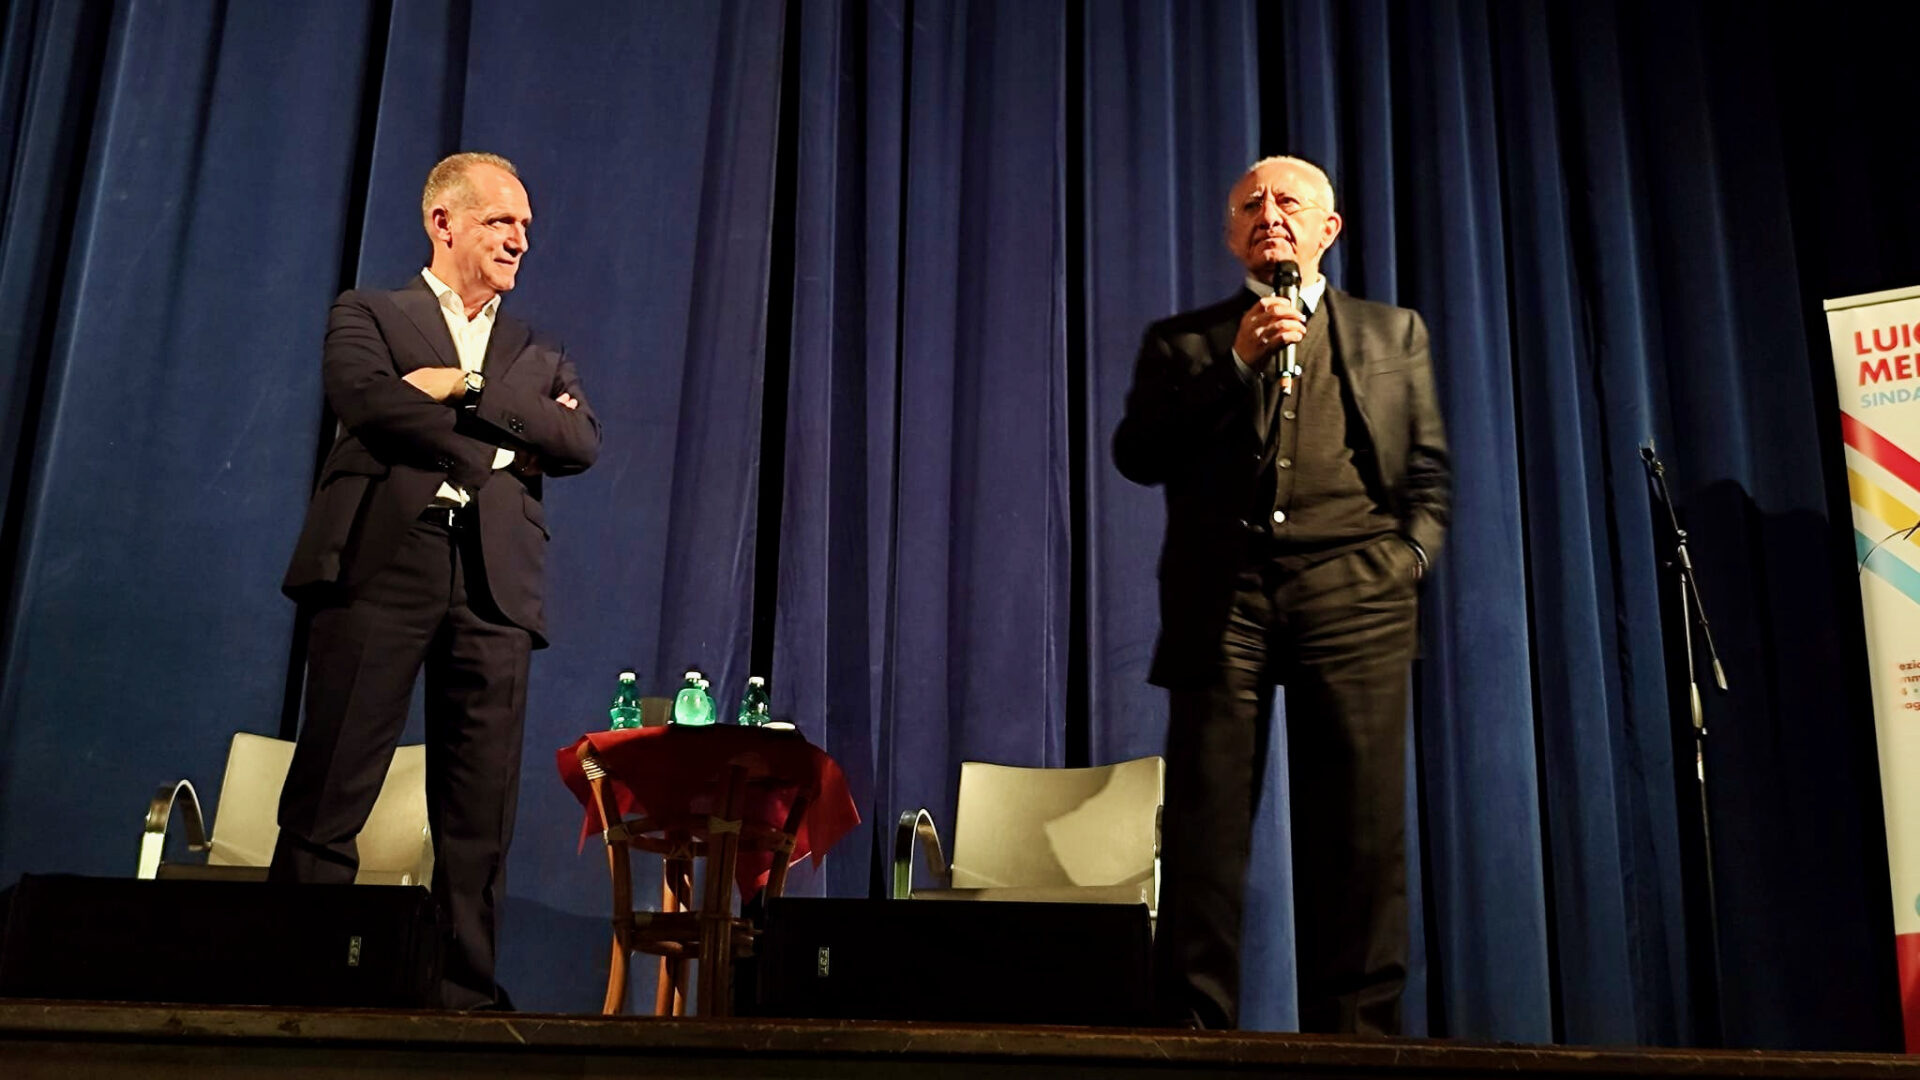 Luigi Mennella e Vincenzo De Luca